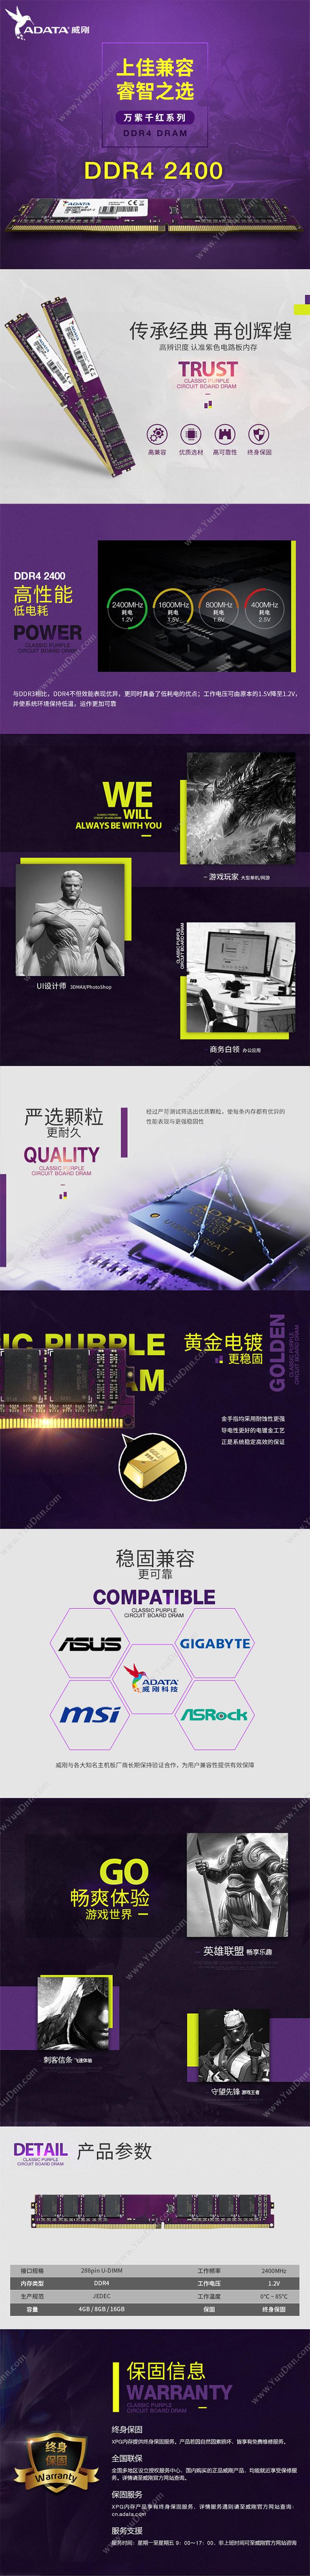 威刚 Adata DDR4 2400 4GB 台式机内存 万紫千红  紫色 笔记本内存